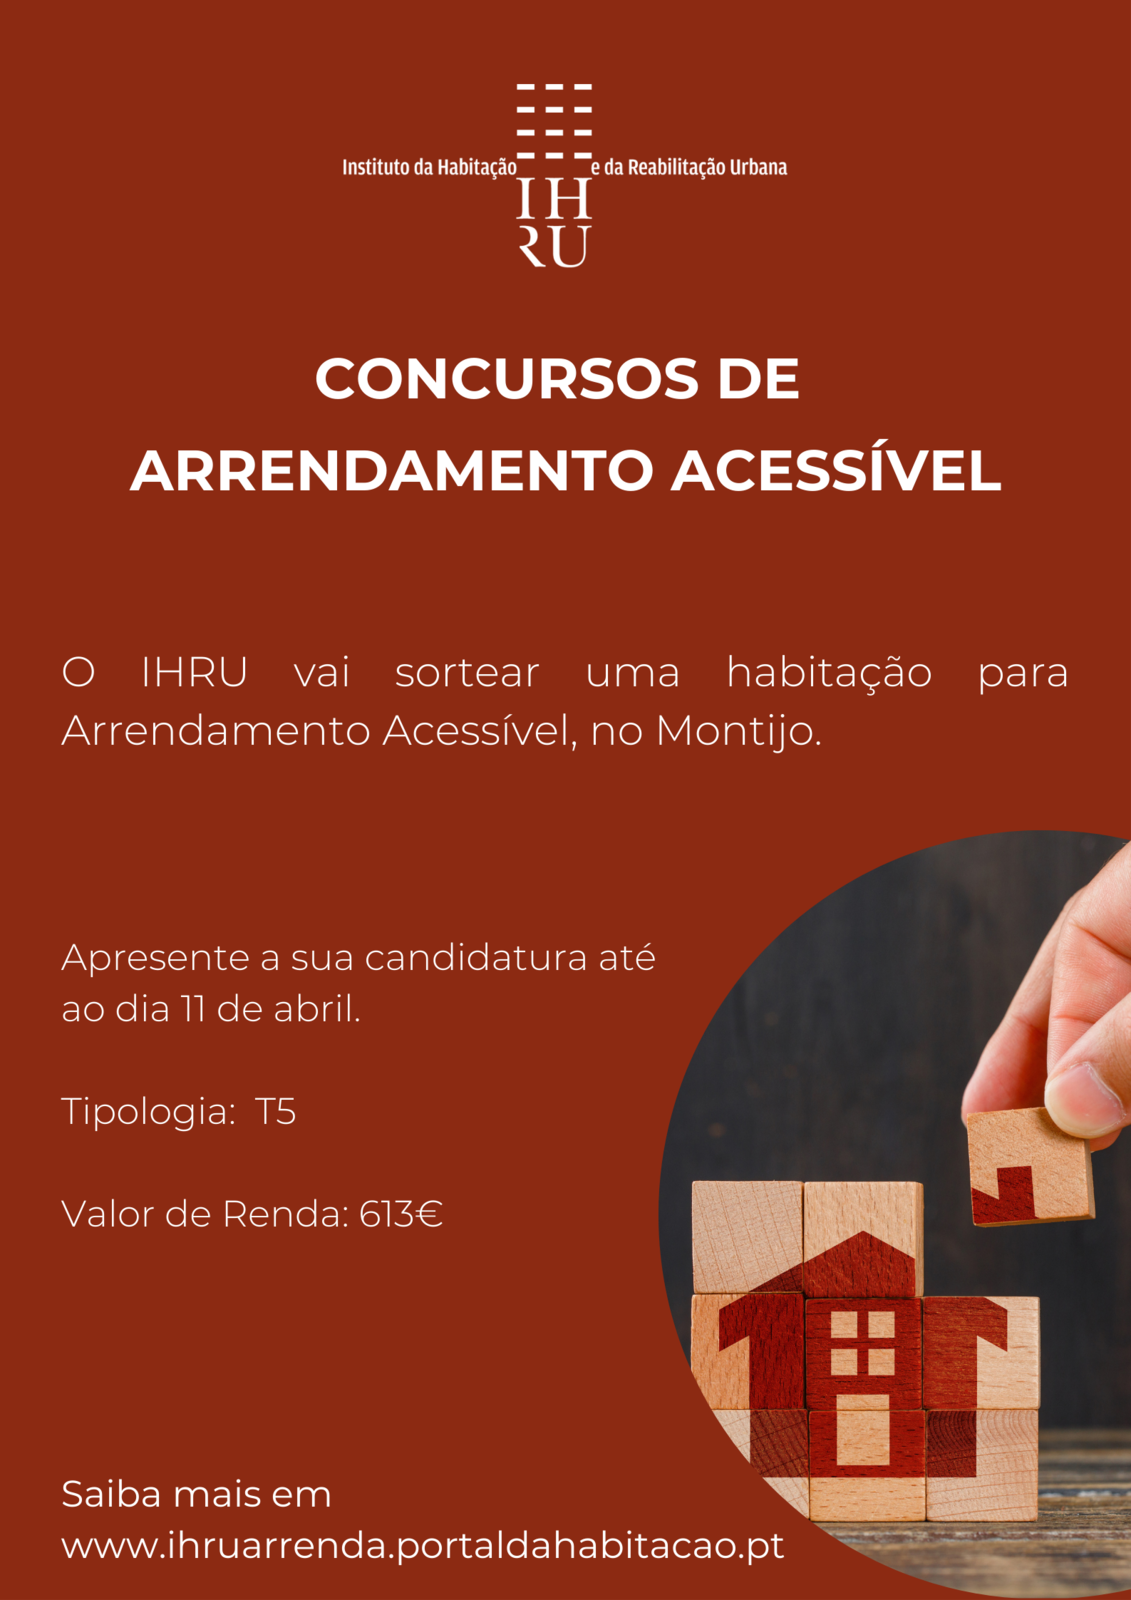 IHRU irá sortear 1 habitação em Arrendamento Acessível no Montijo